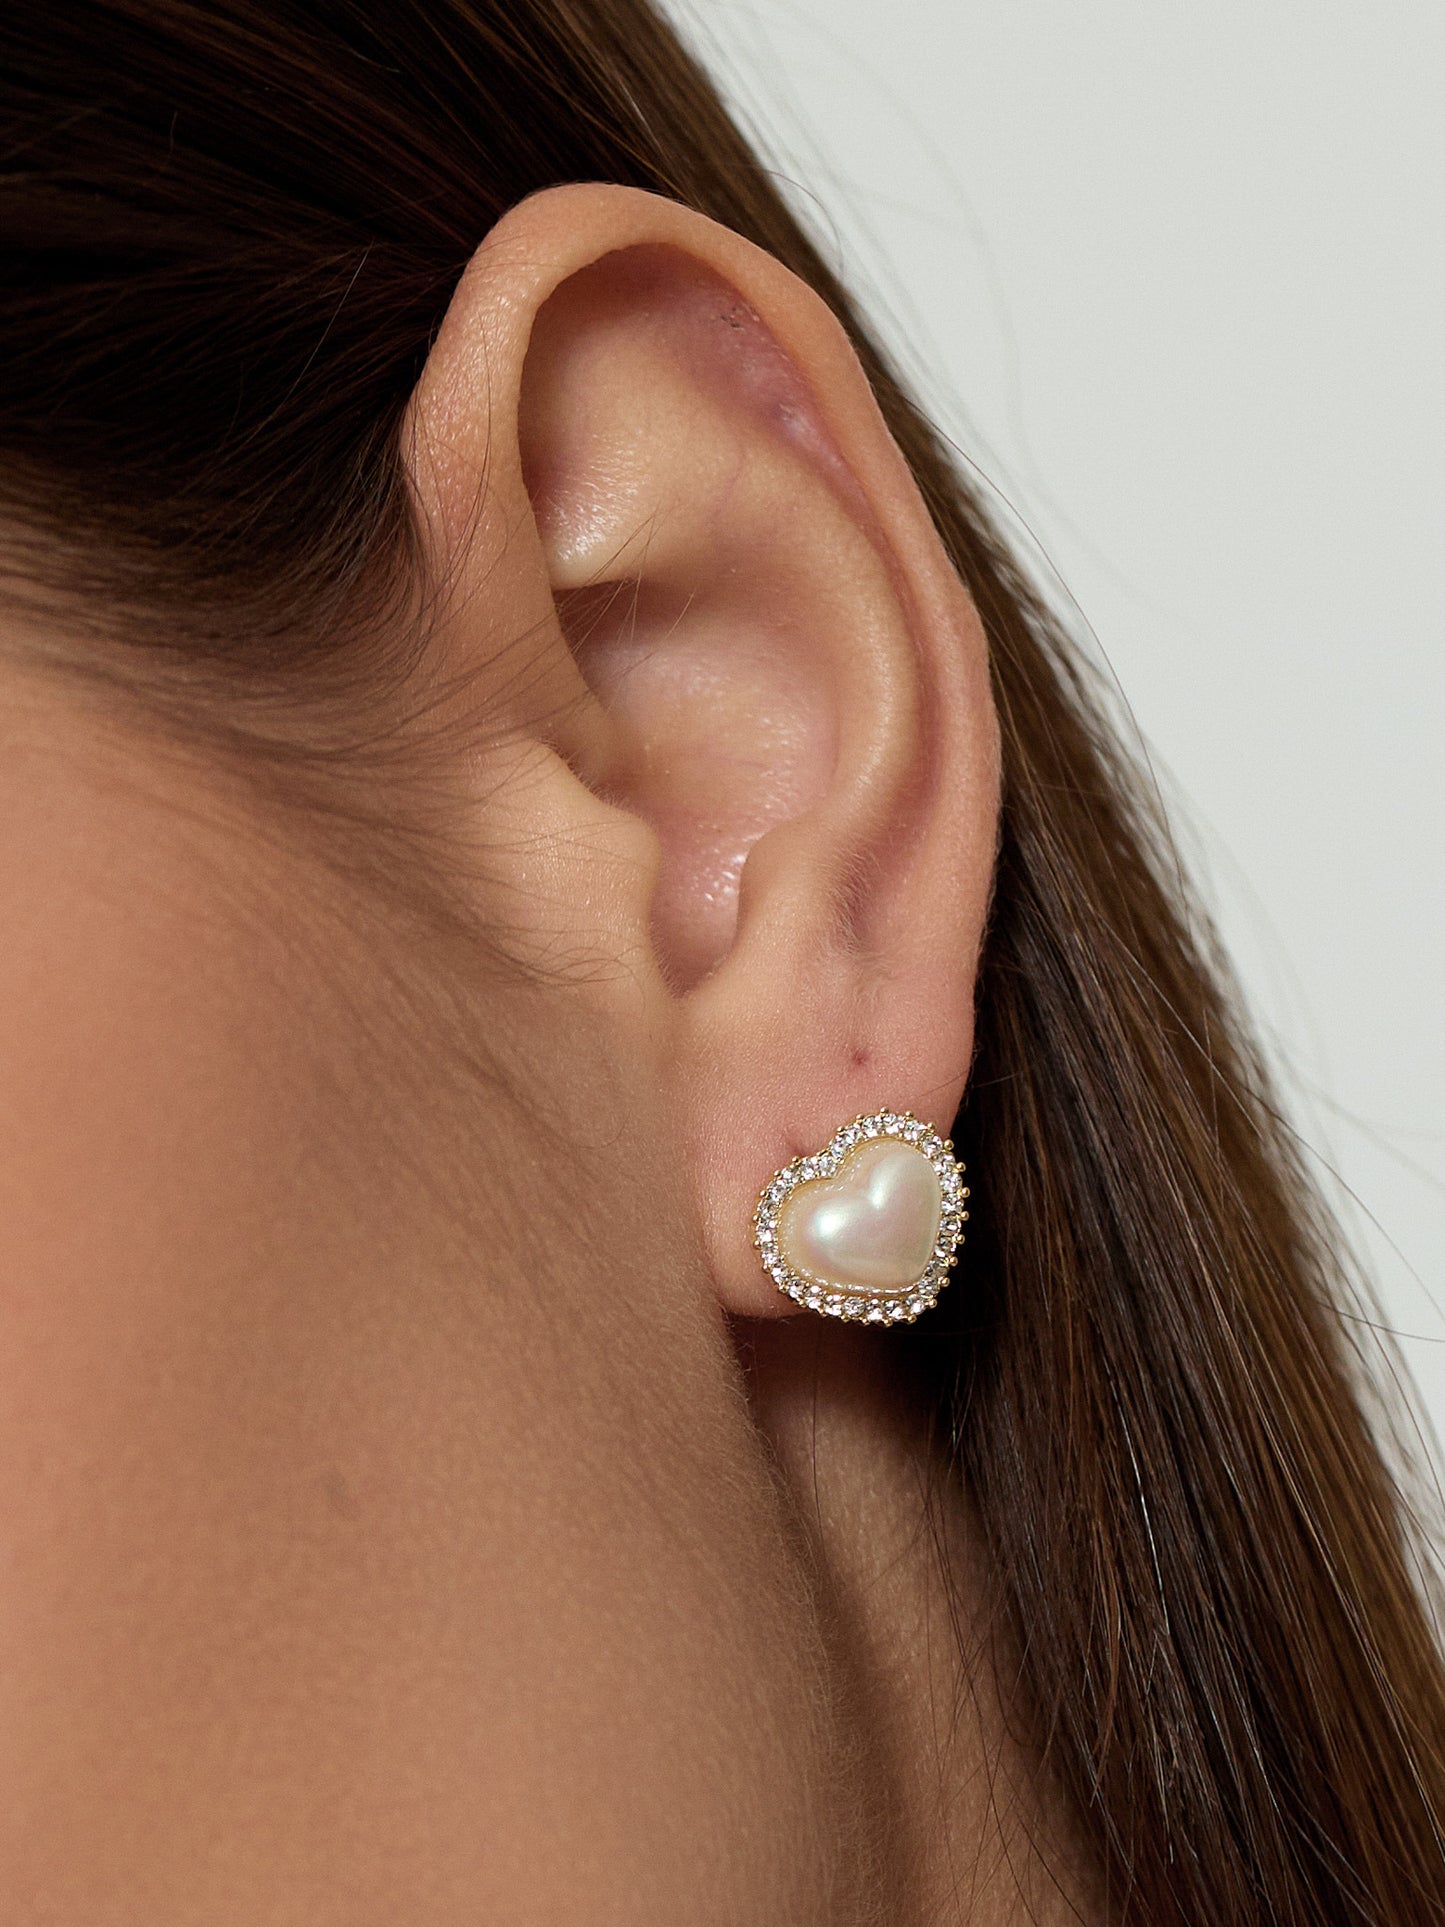 Luna's Lullaby Earrings